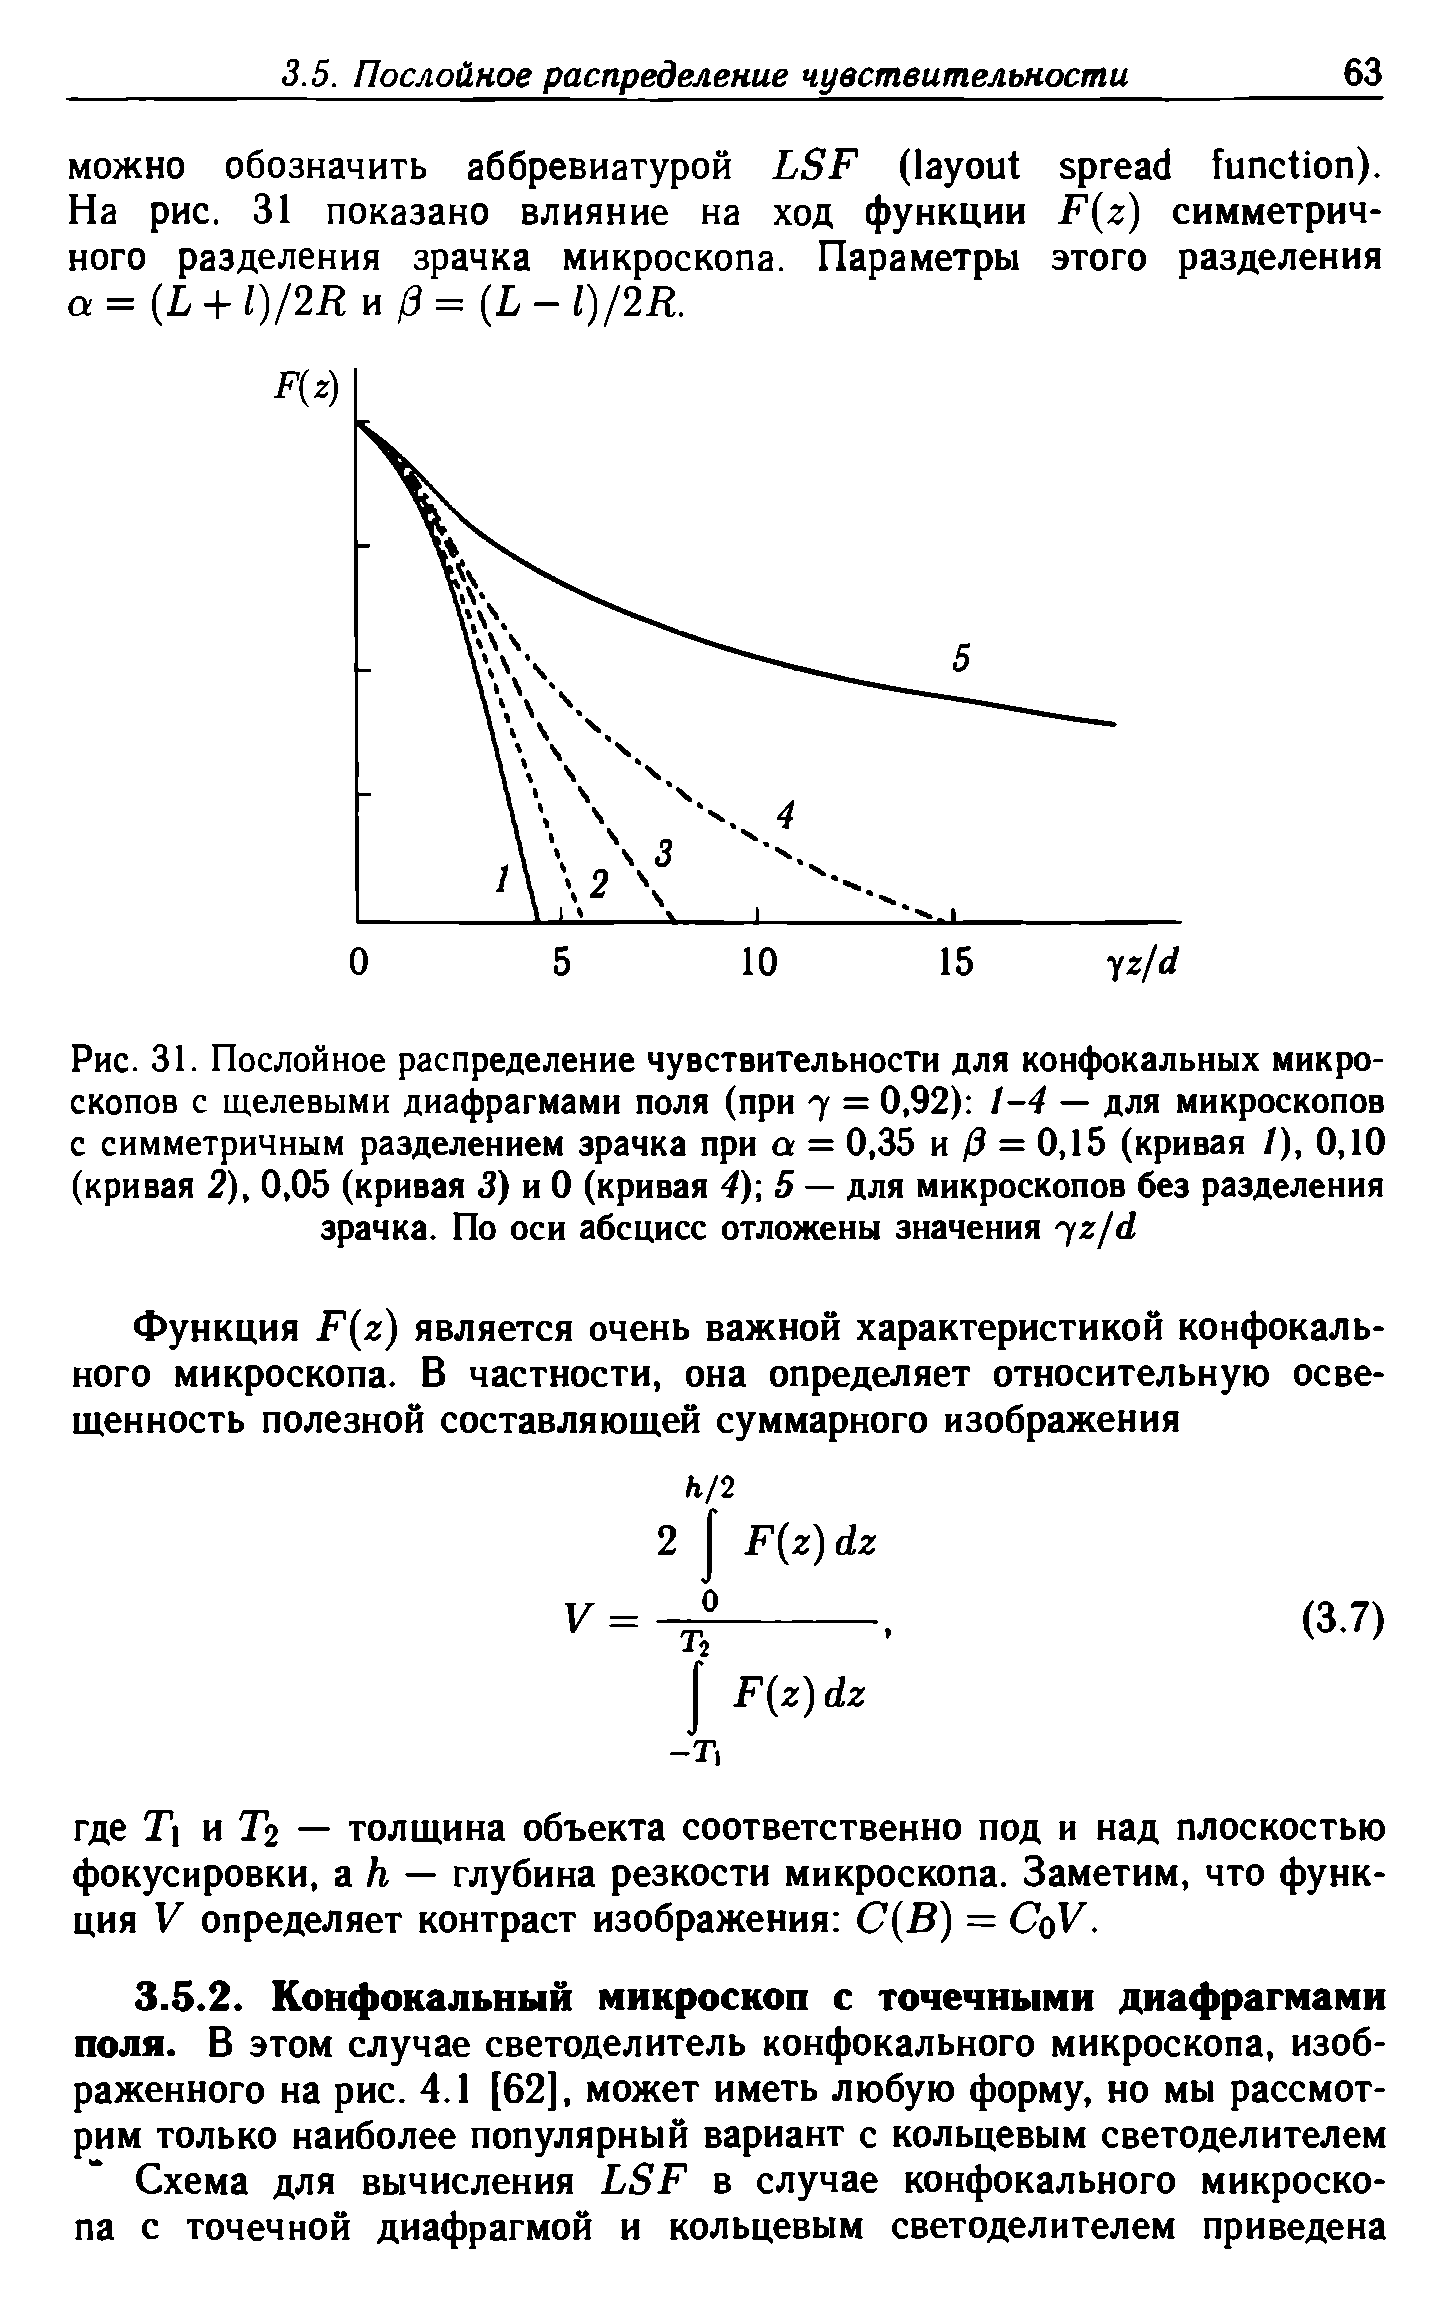 Рис. 31. Послойное распределение чувствительности для конфокальных микроскопов с щелевыми диафрагмами поля (при 7 = 0,92) 1-4 — для микроскопов с симметричным разделением зрачка при а = 0,35 и 3 = 0,15 (кривая /), 0,10 (кривая 2), 0,05 (кривая 3) и 0 (кривая 4) 5 — для микроскопов без разделения зрачка. По оси абсцисс отложены значения 72/4/...